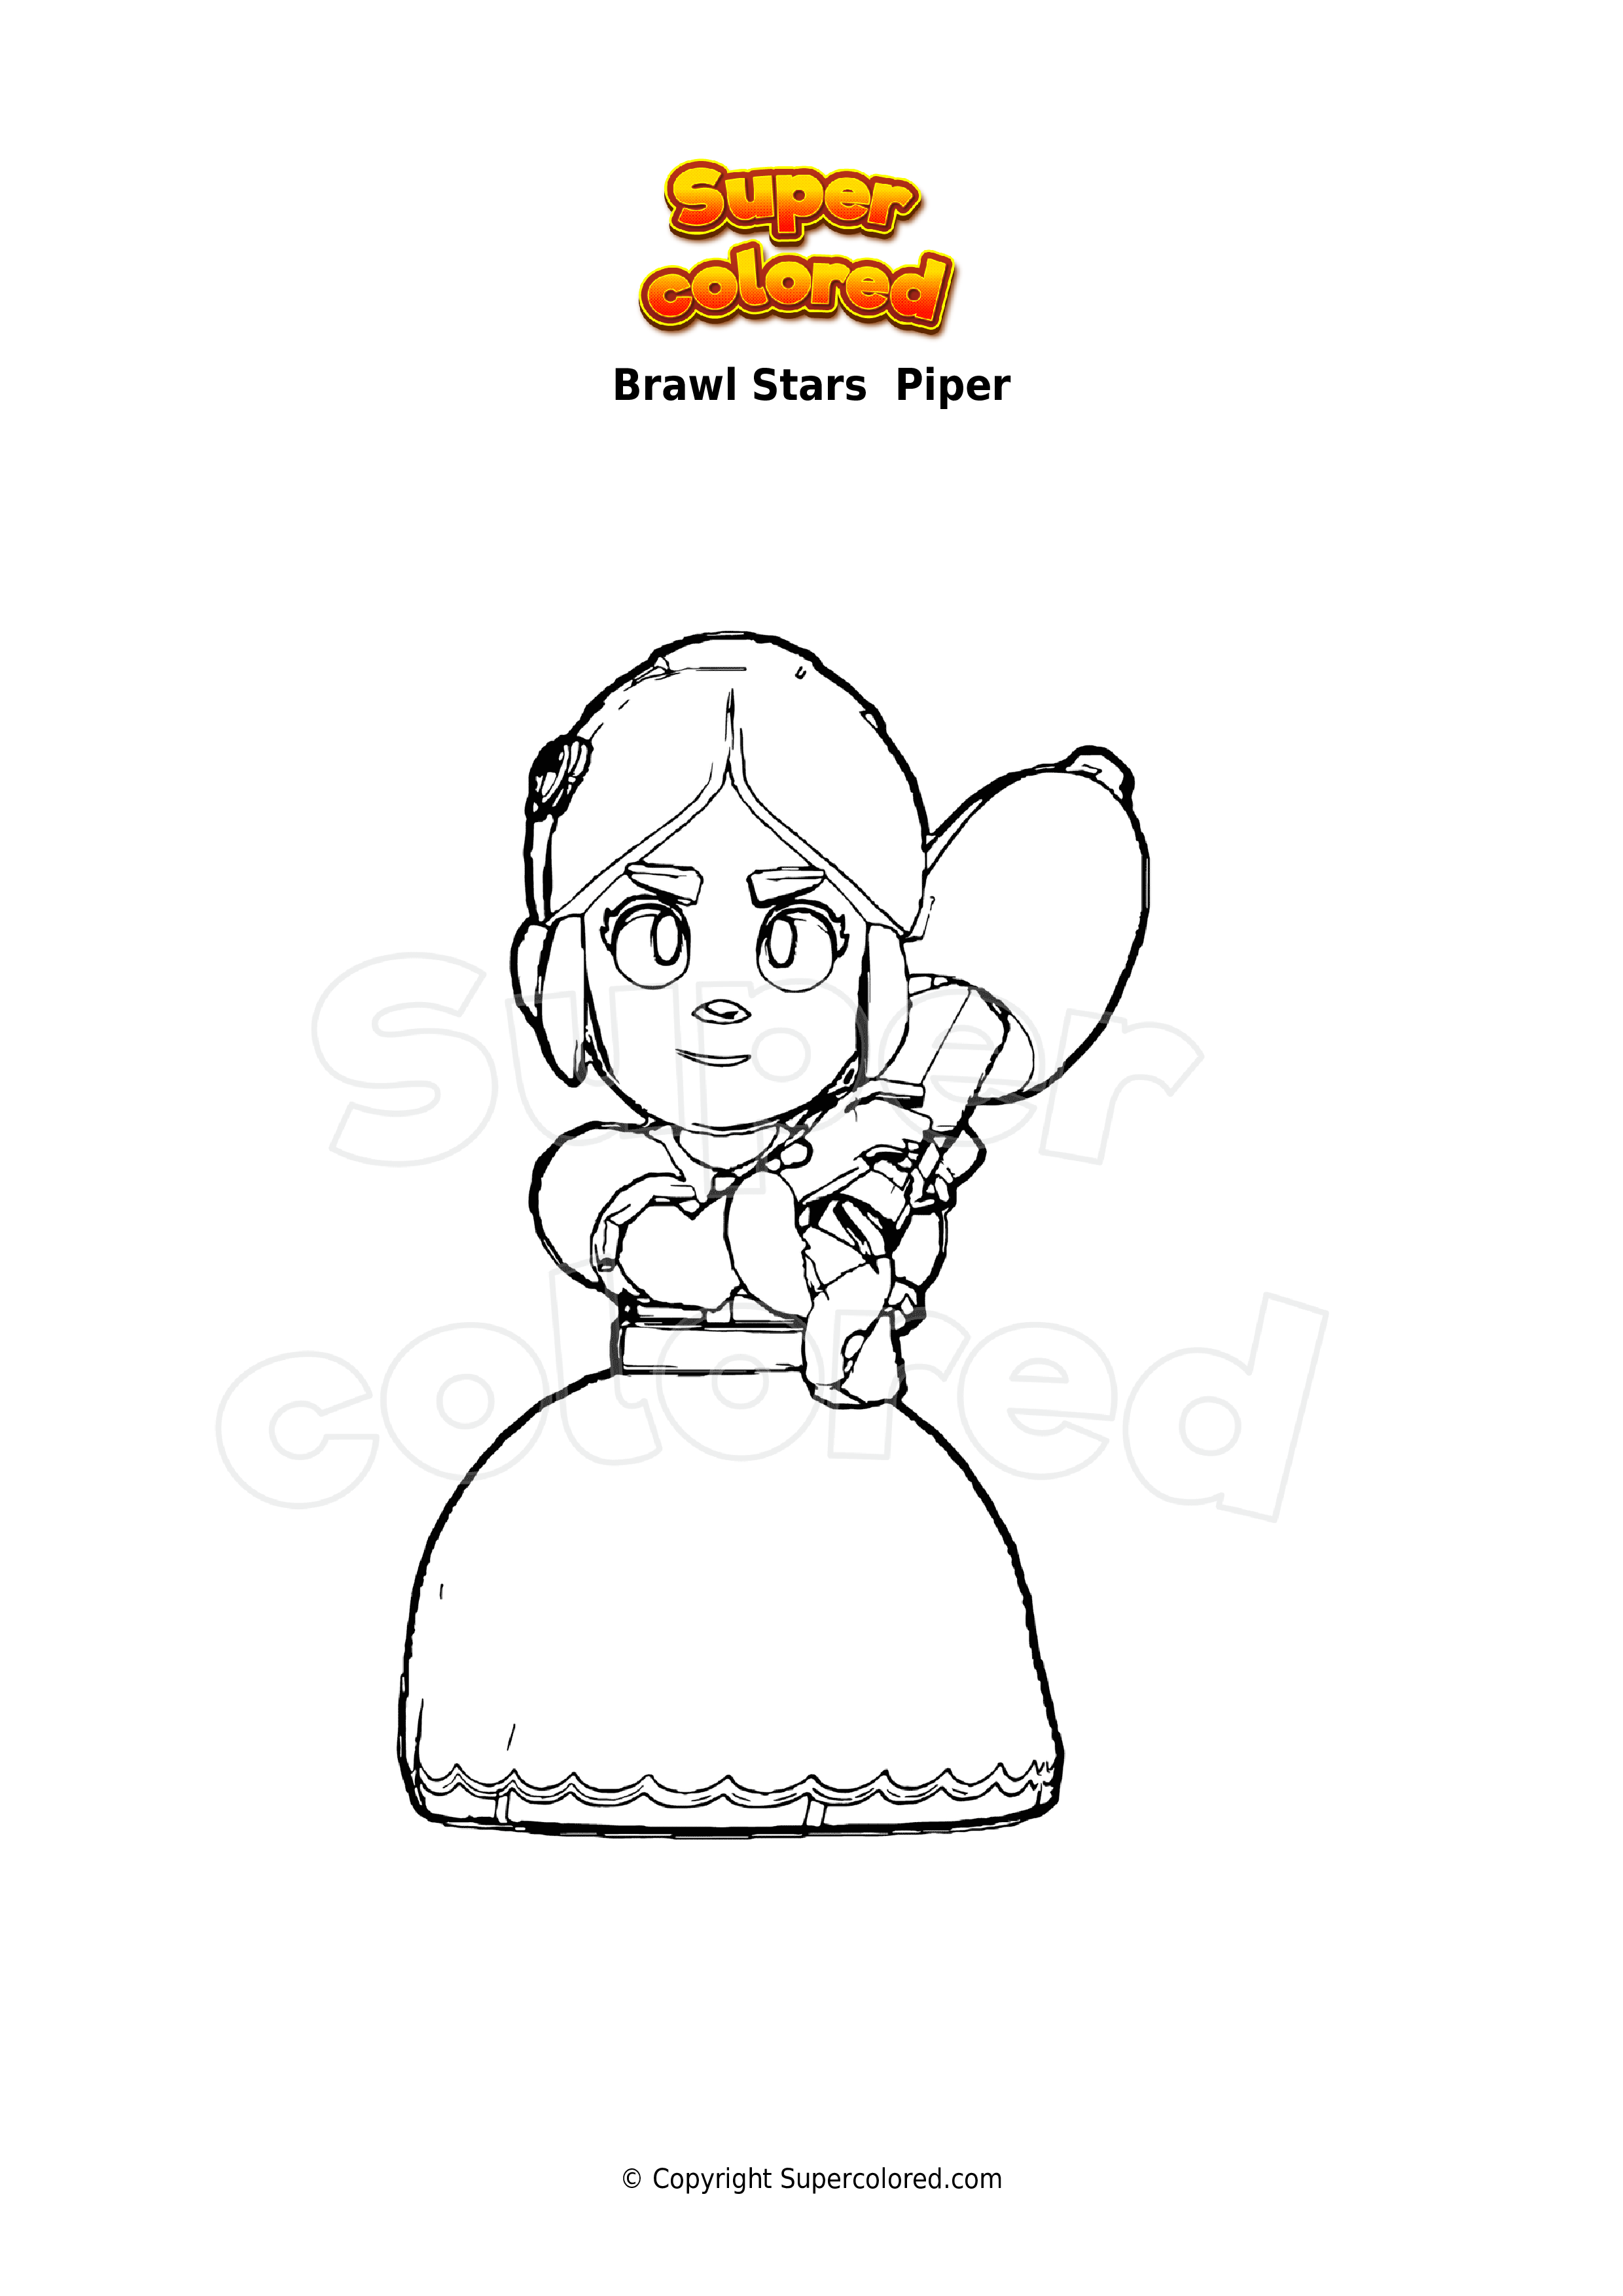 Dibujo Para Colorear Brawl Stars Piper Supercolored Com - personajes de brawl stars para colorear piper